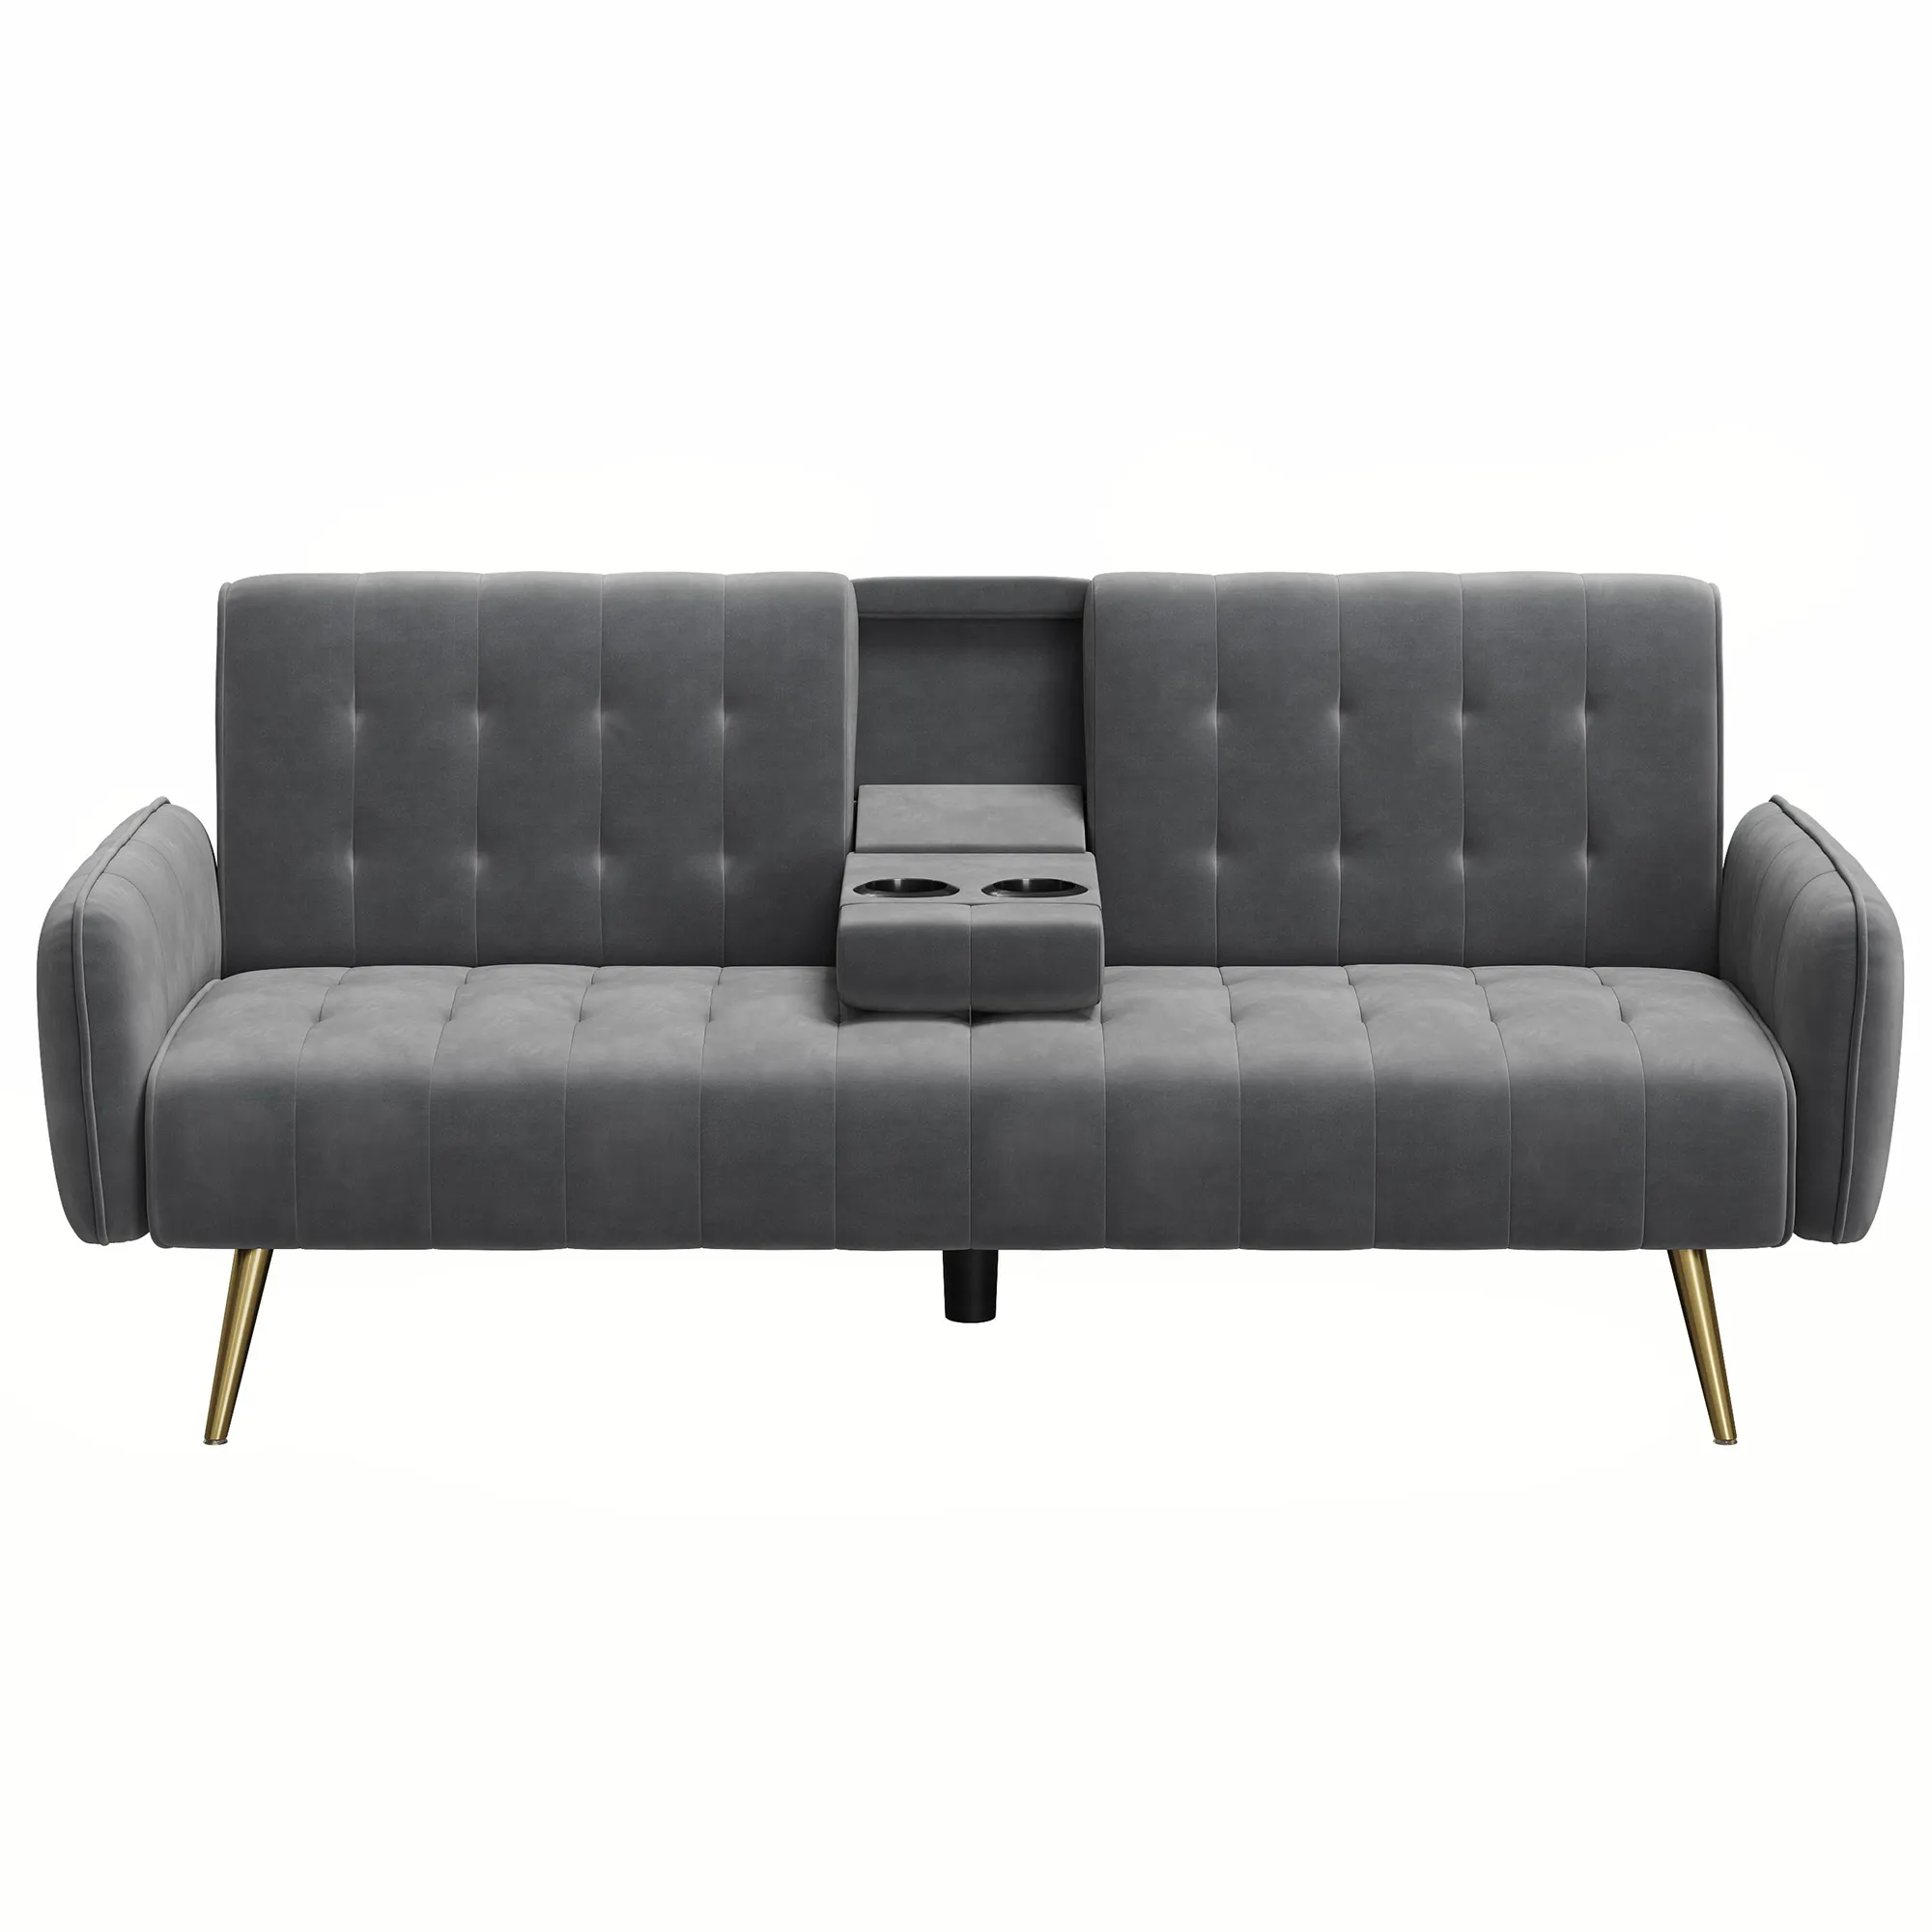 VASAGLE थोक तीन सीट दीवान तह Armrests के साथ आधुनिक डिजाइन लकड़ी के सोफे बिस्तर परिवर्तनीय सोफे Settee और 2 तकिये